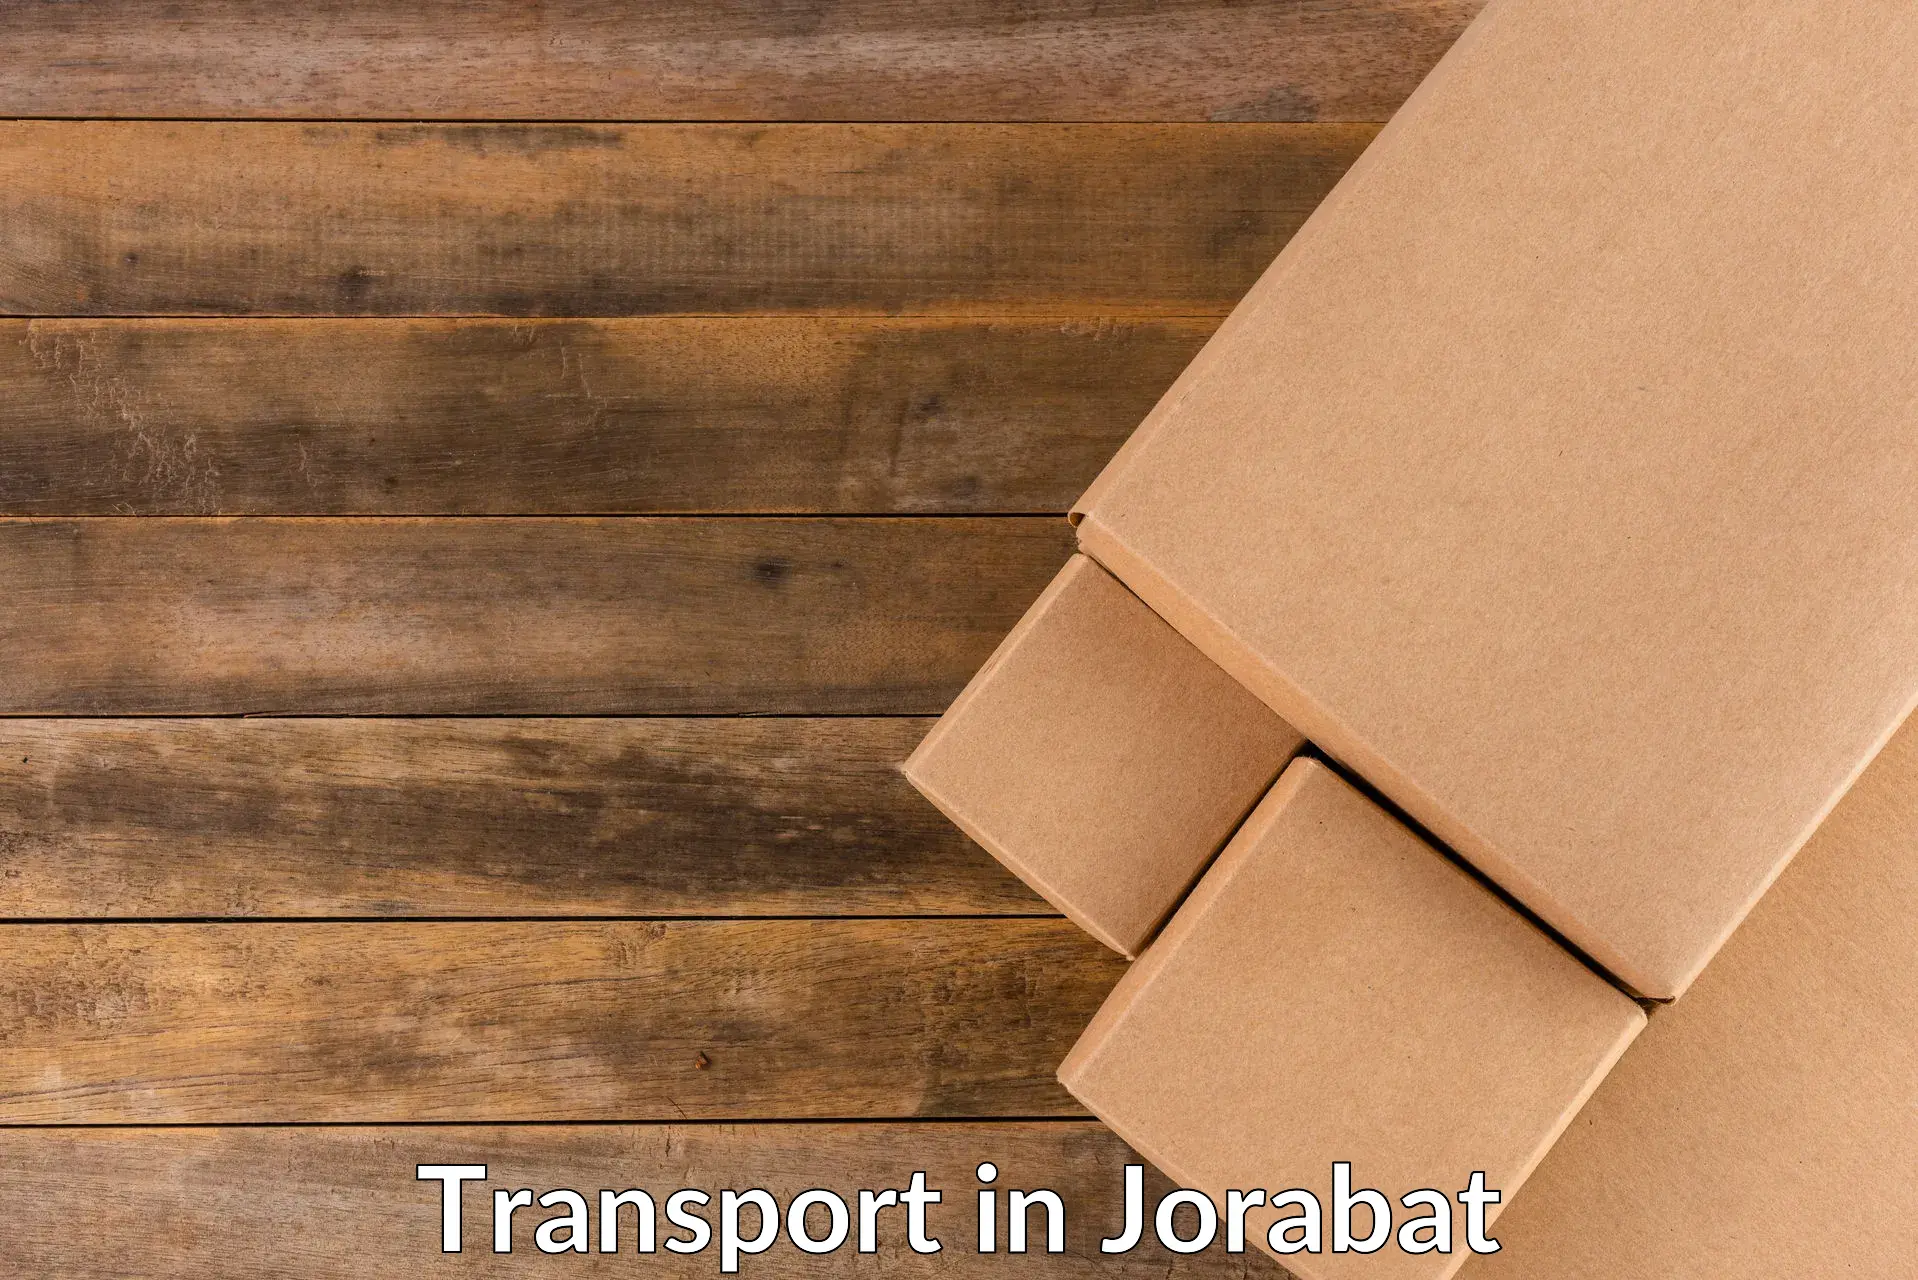 Air cargo transport services in Jorabat